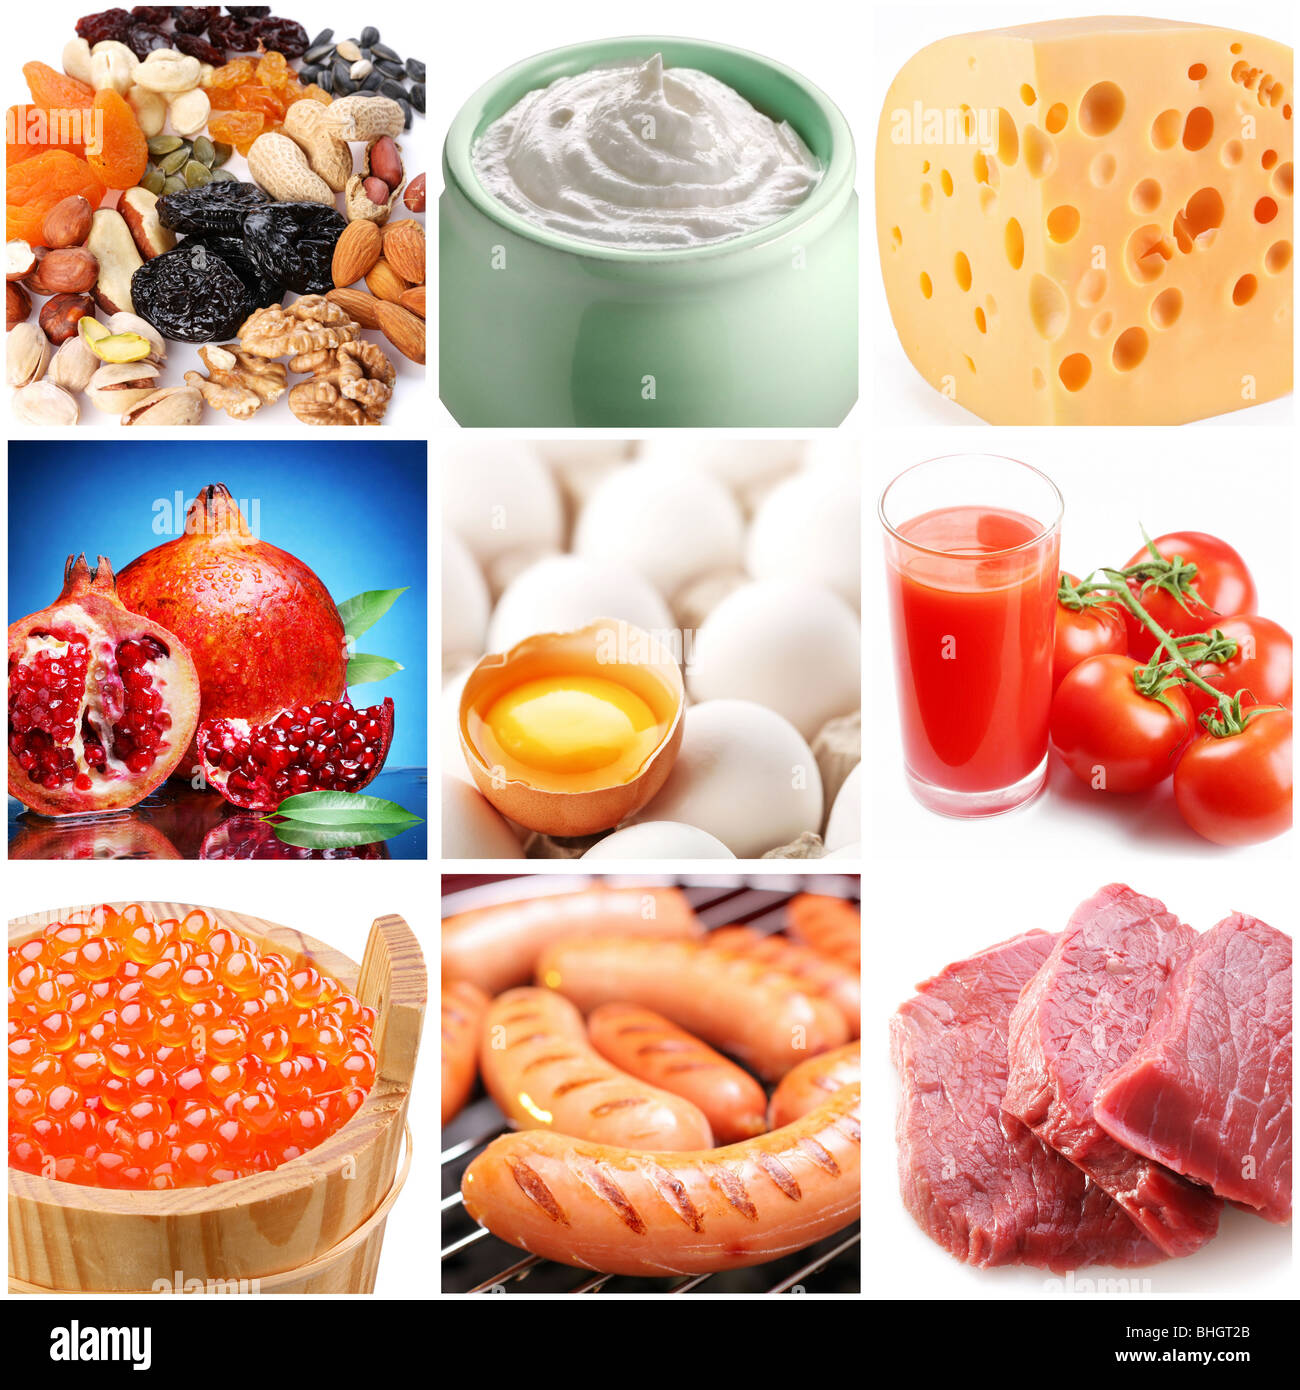 Raccolta di immagini sul tema della "alimentare" Foto Stock